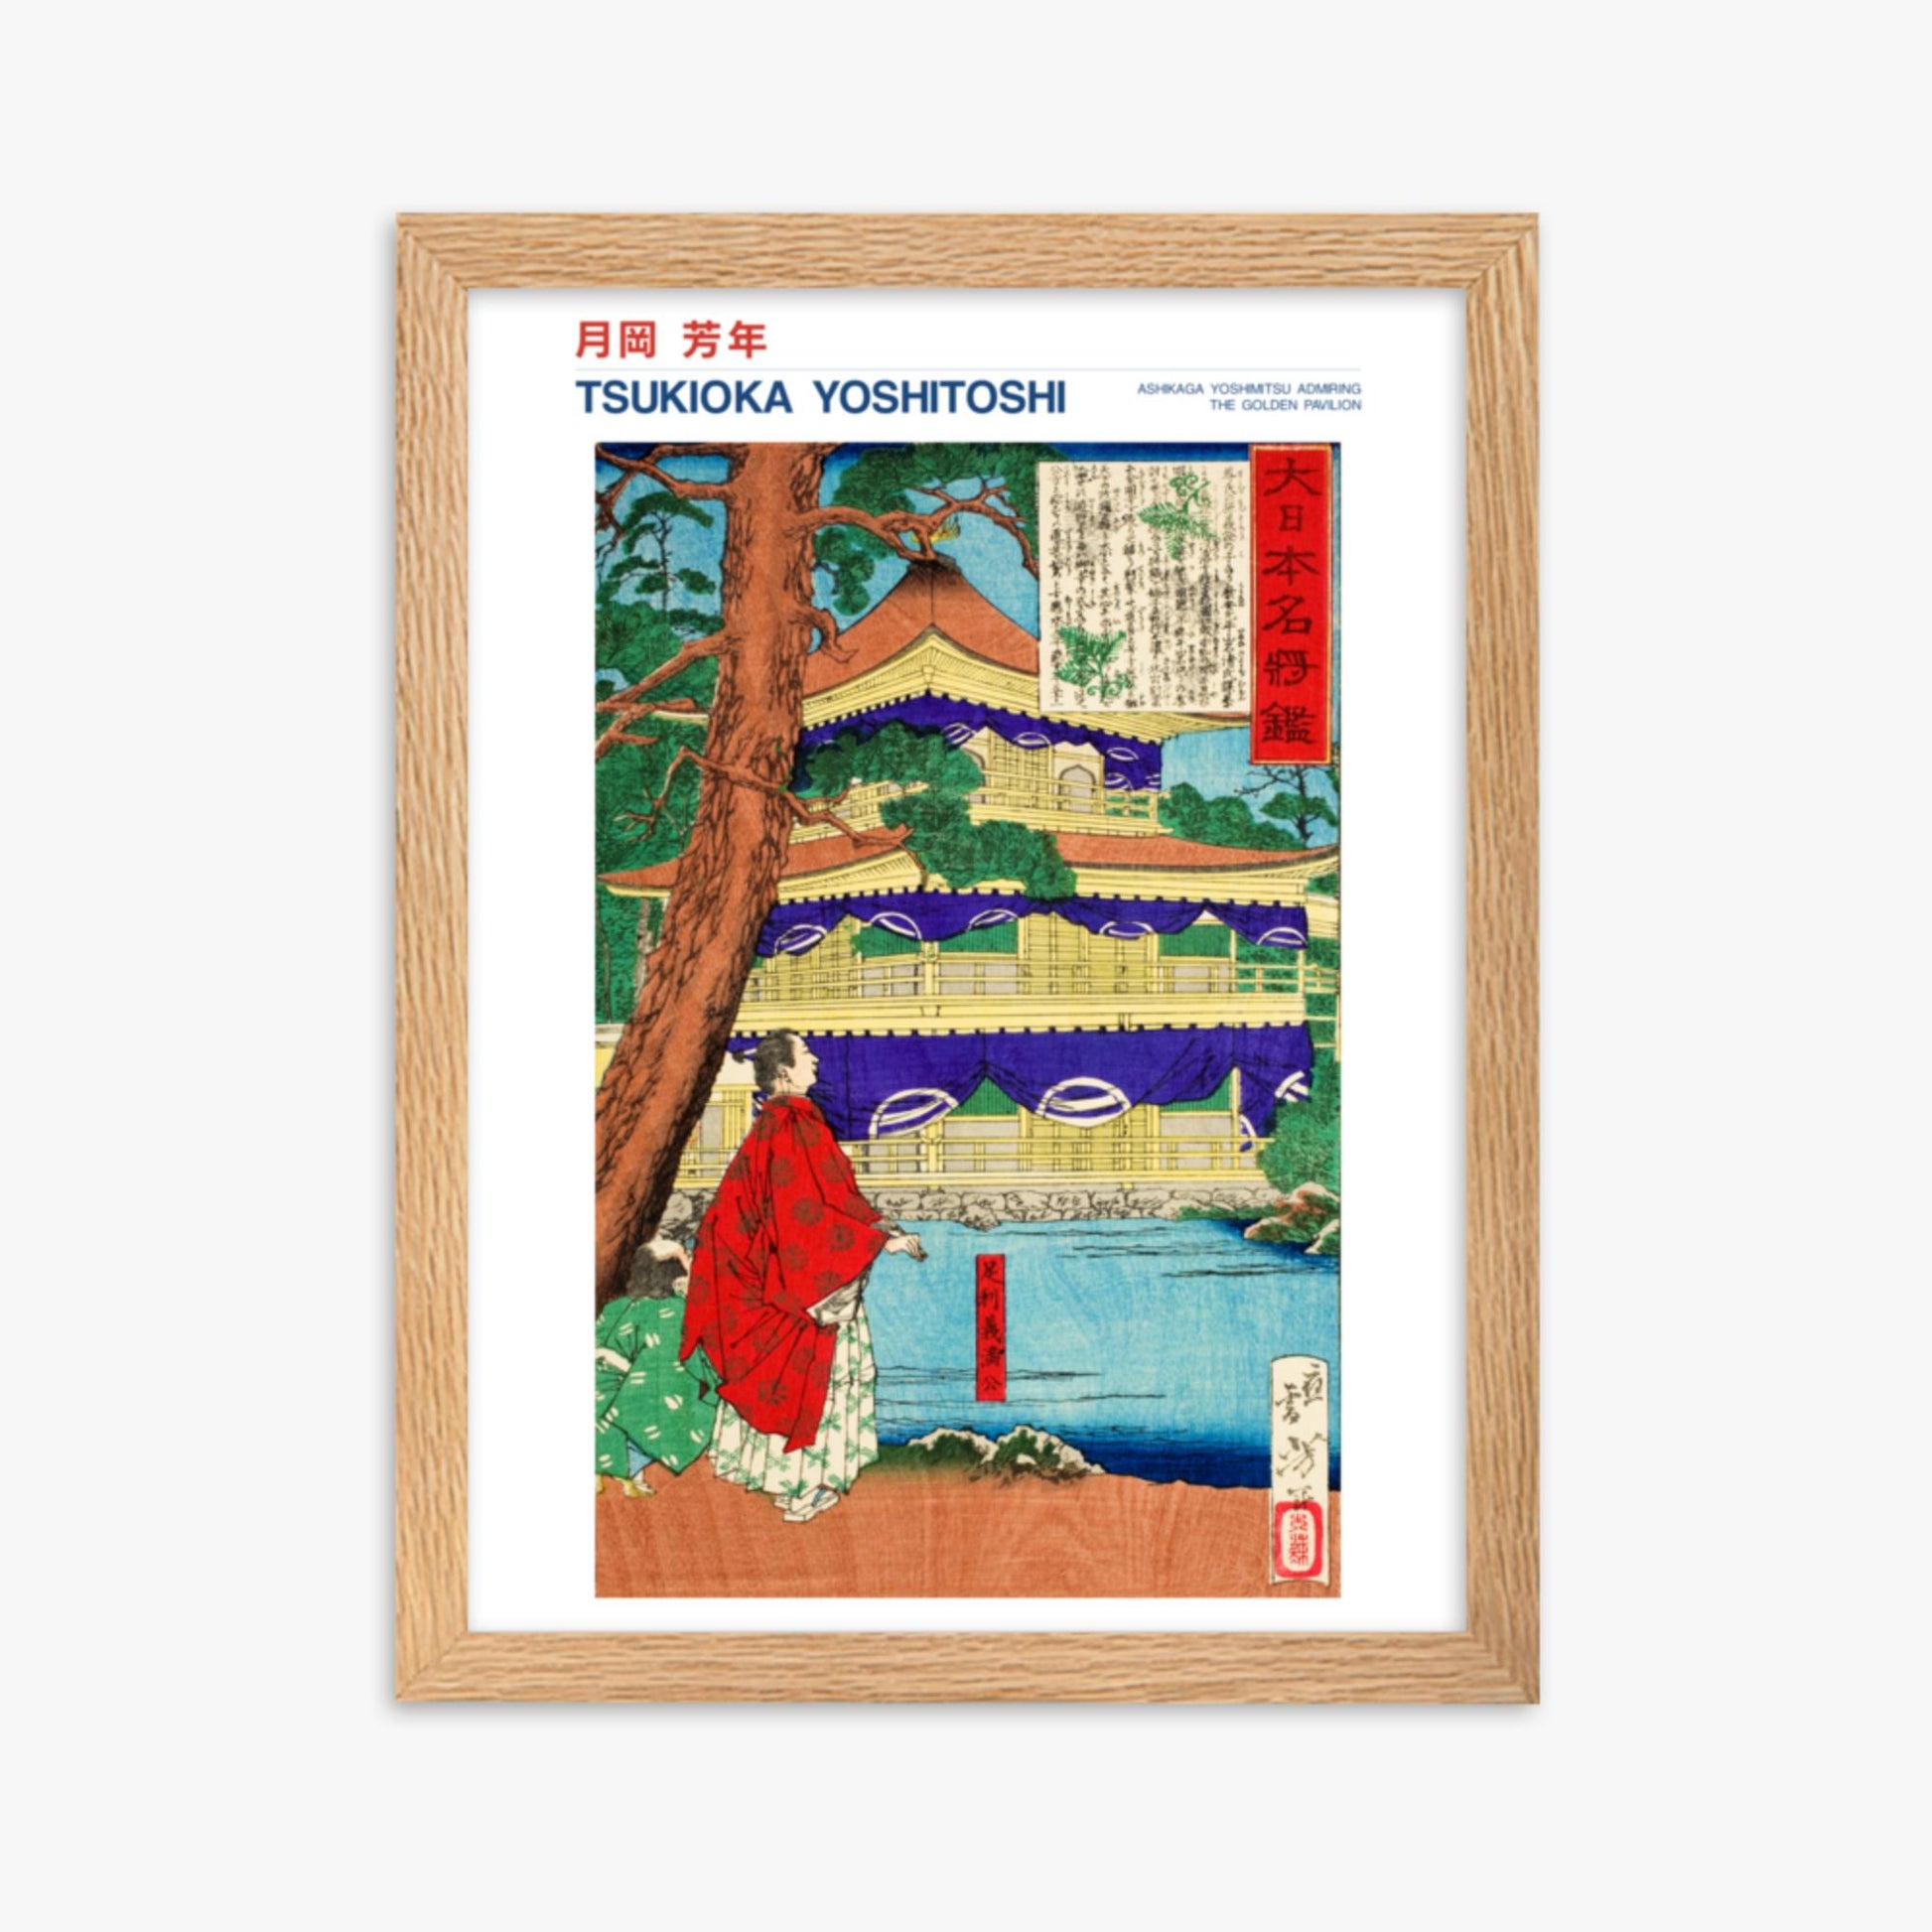 Tsukioka Yoshitoshi - Ashikaga Yoshimitsu admiring the Golden Pavilion - Decoration 30x40 cm Poster With Oak Frame